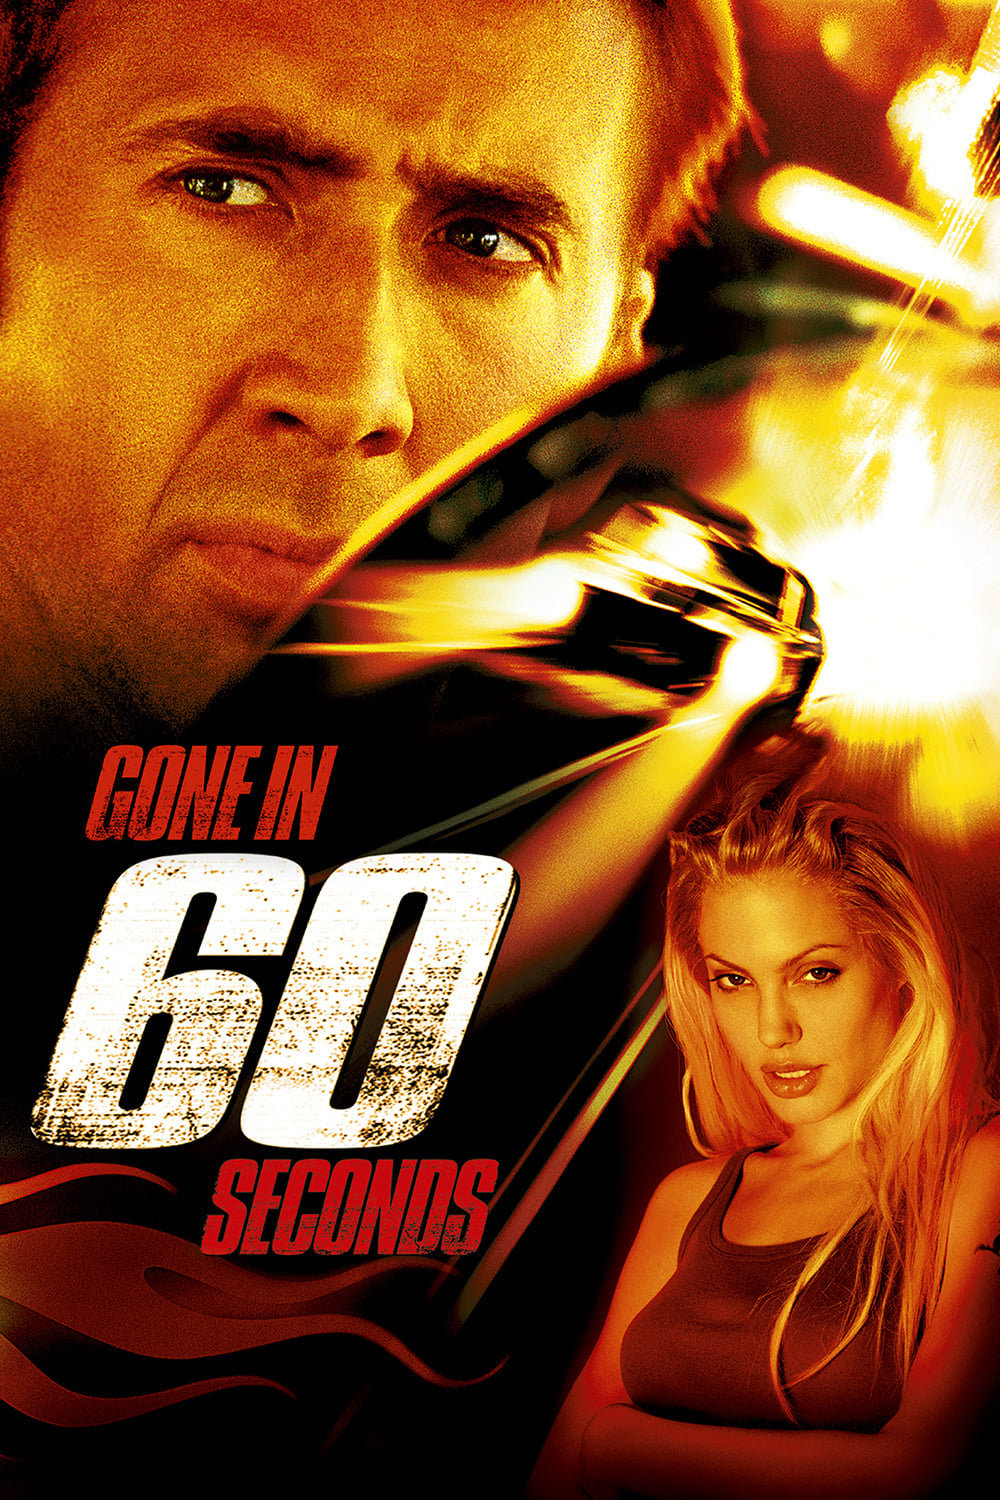 Nur noch 60 Sekunden (2000)